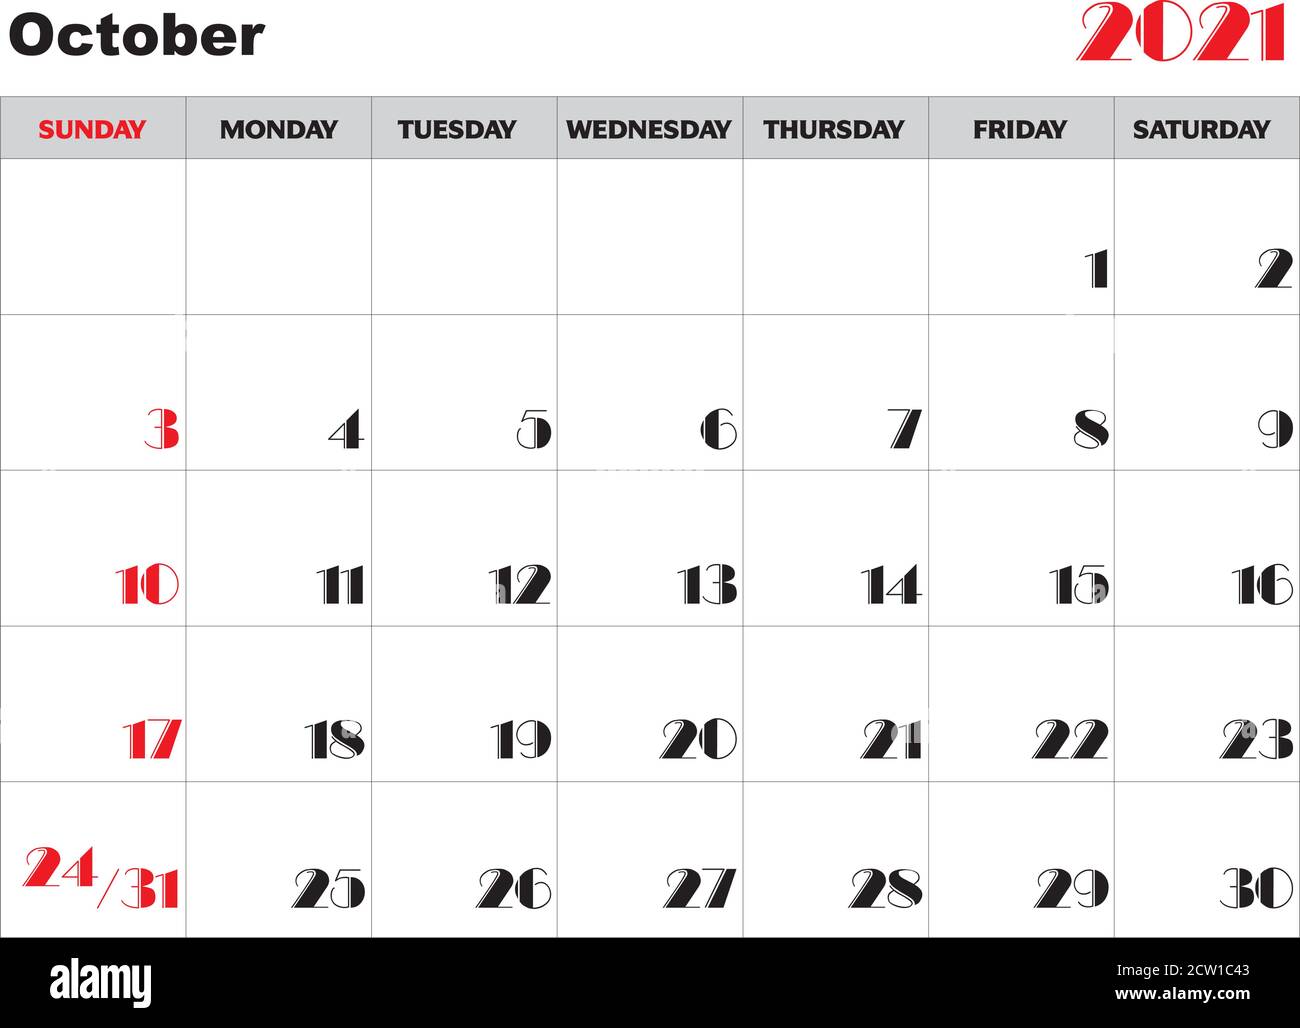 Calendar October 2021 Stock Vector